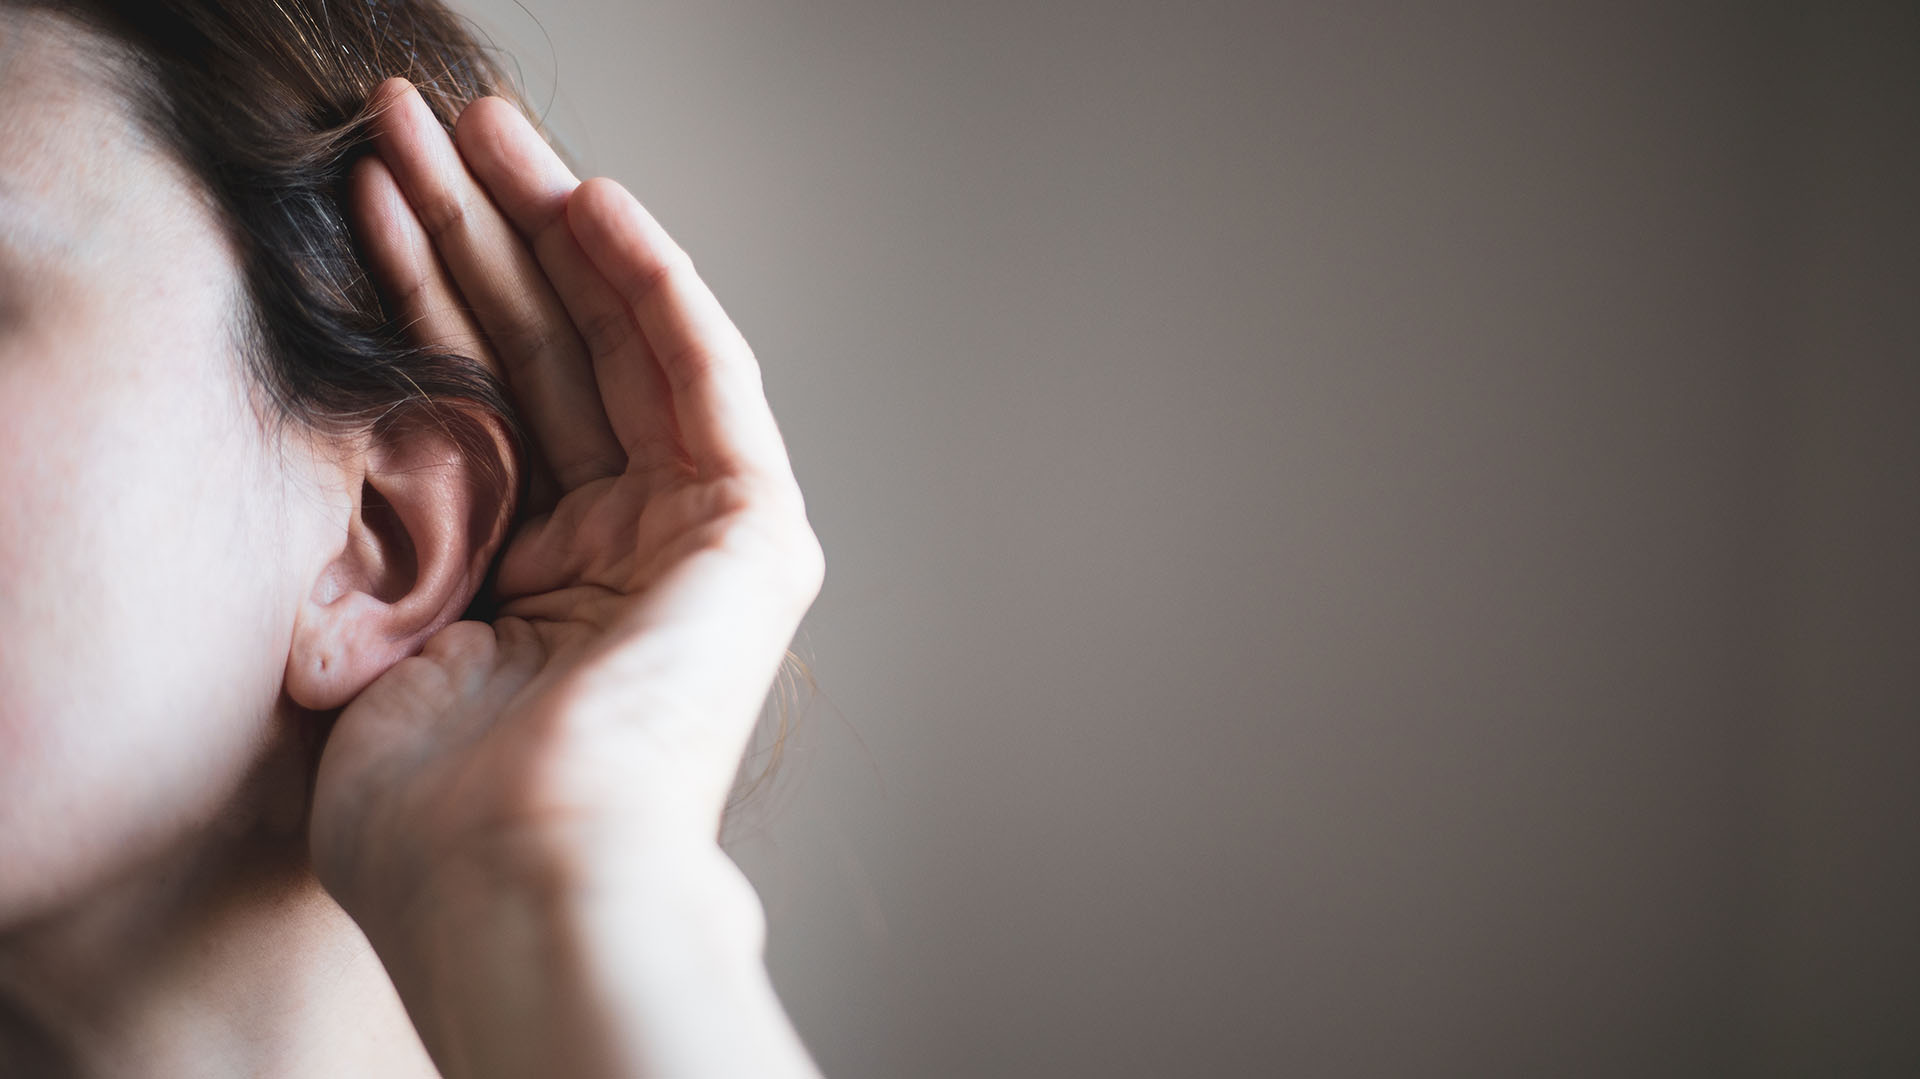 Factores de pérdida auditiva pueden ser el consumo de contenido multimedia de forma excesiva, de la mano del uso de auriculares y/o equipos de sonido a volúmenes poco recomendables, (Getty Images)